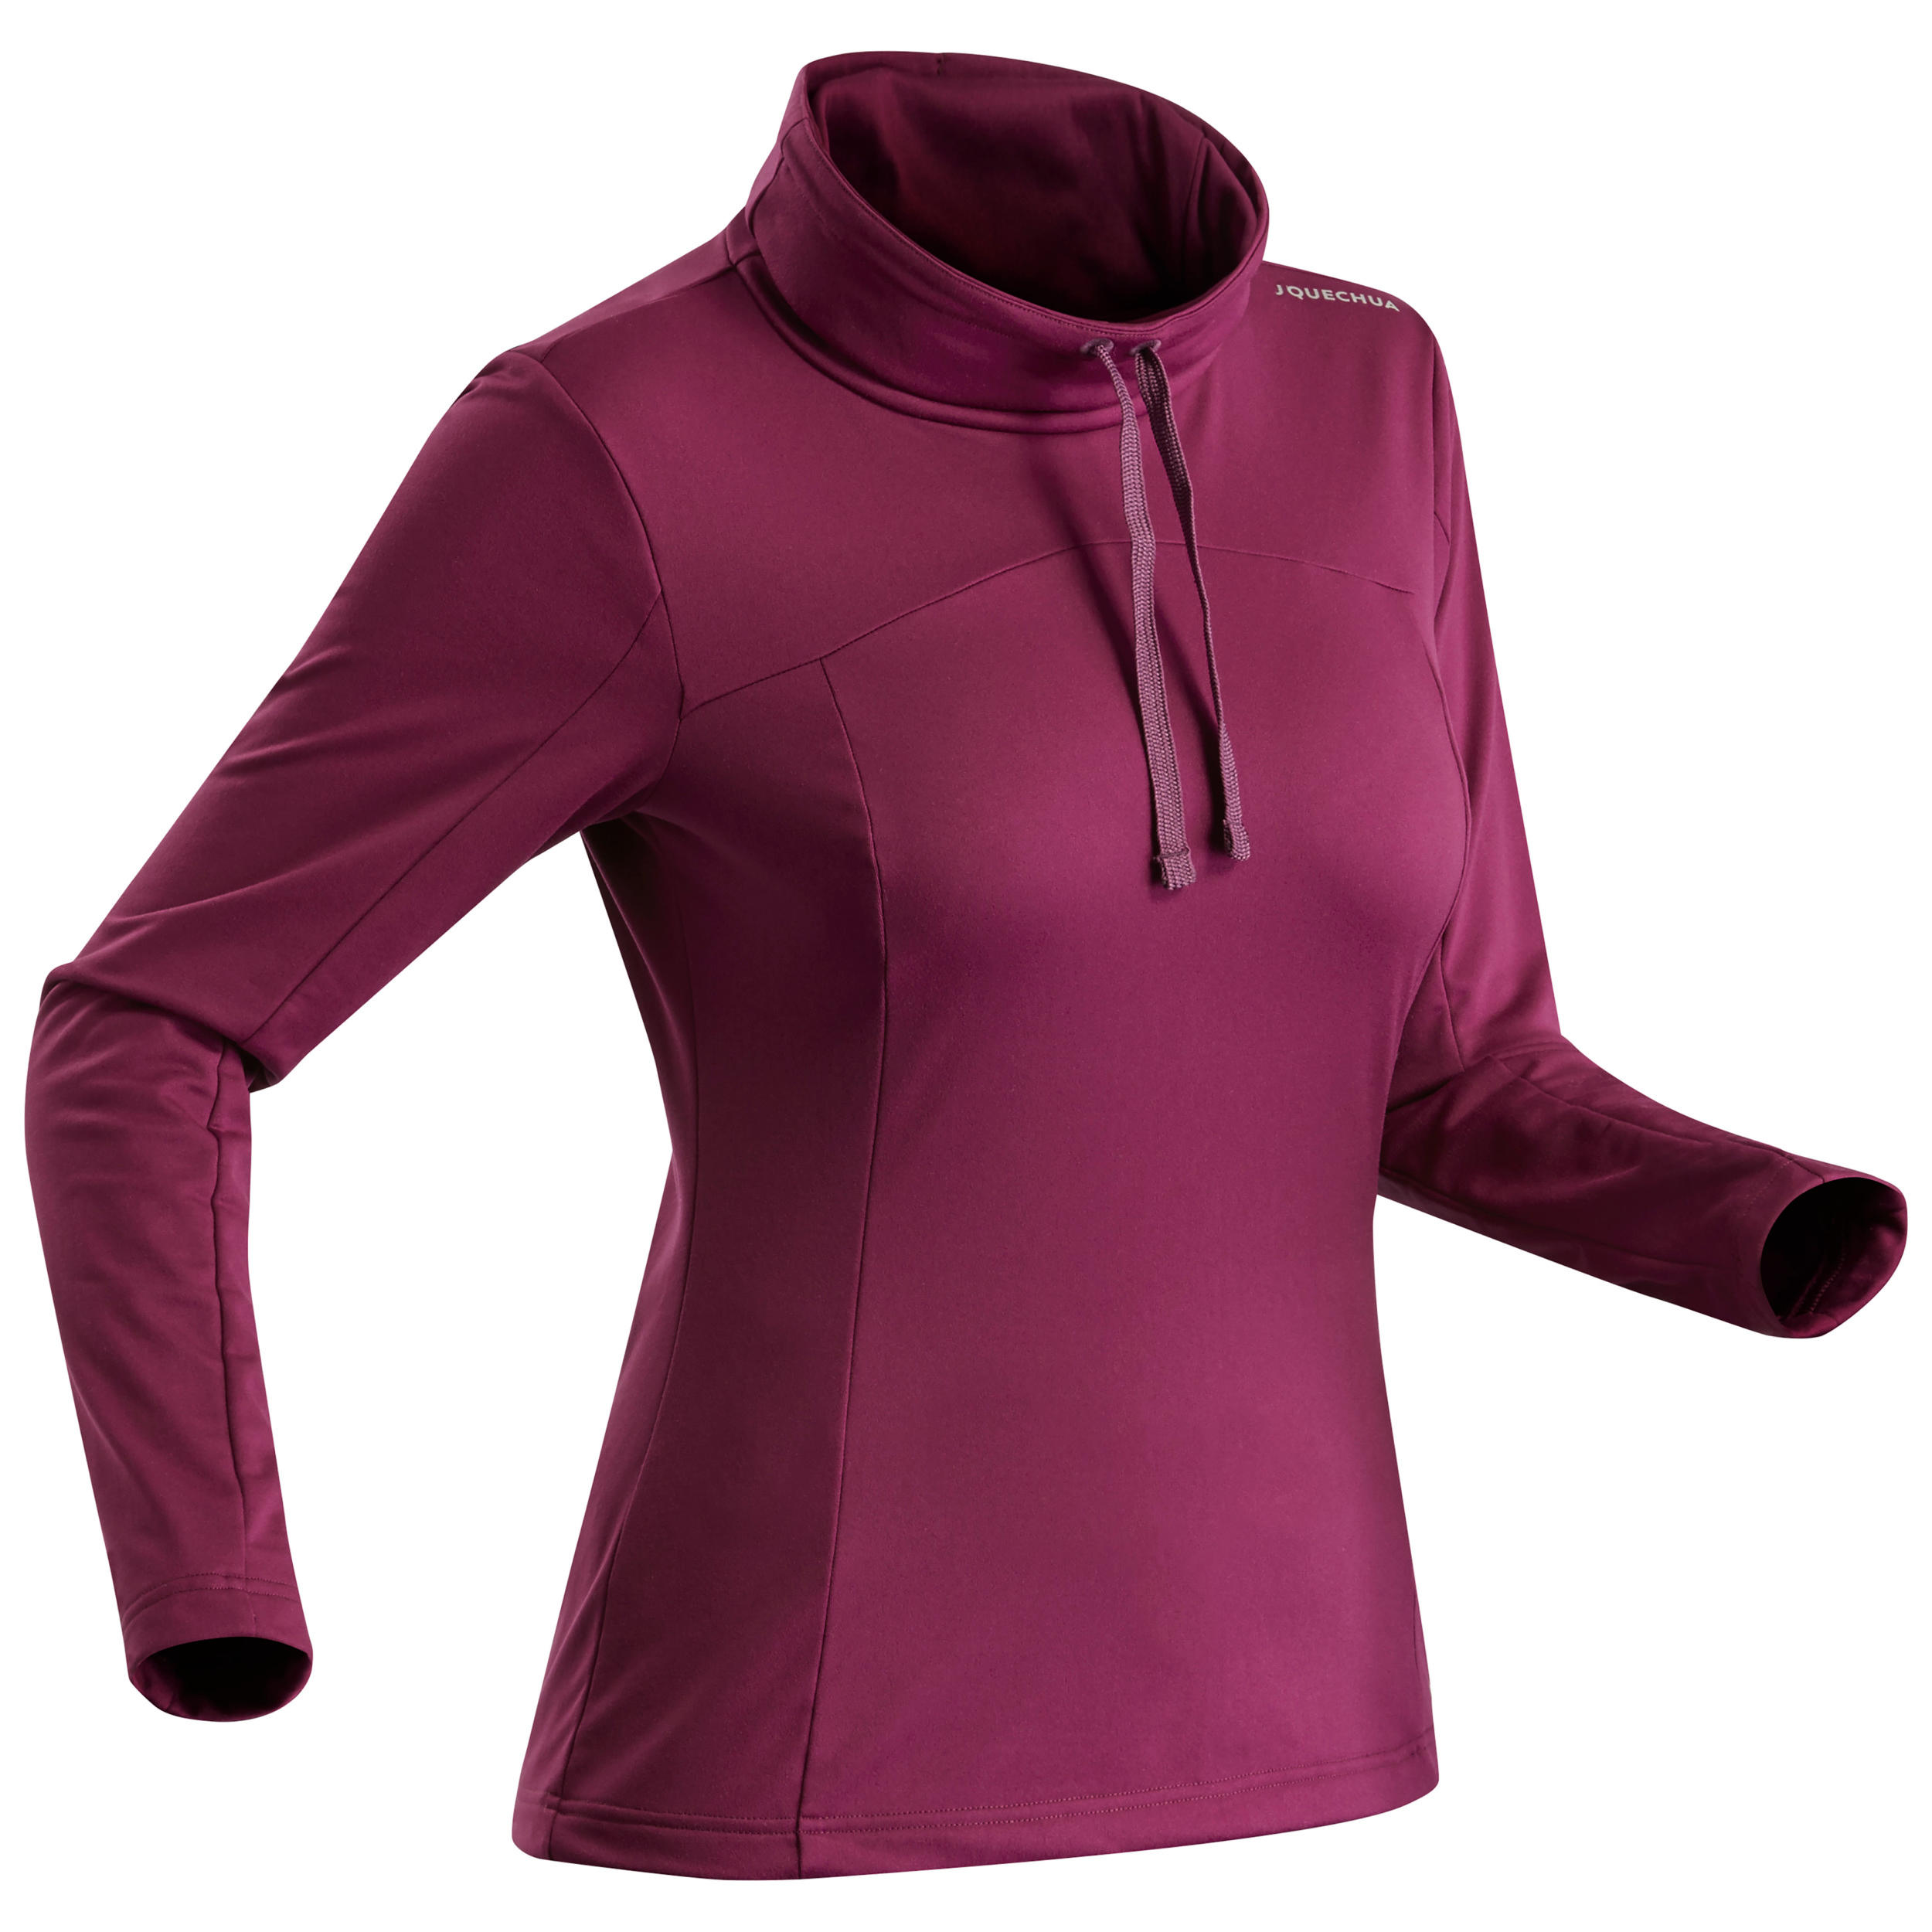 Women’s Long-sleeved Warm Hiking T-shirt - SH100 WARM 1/4